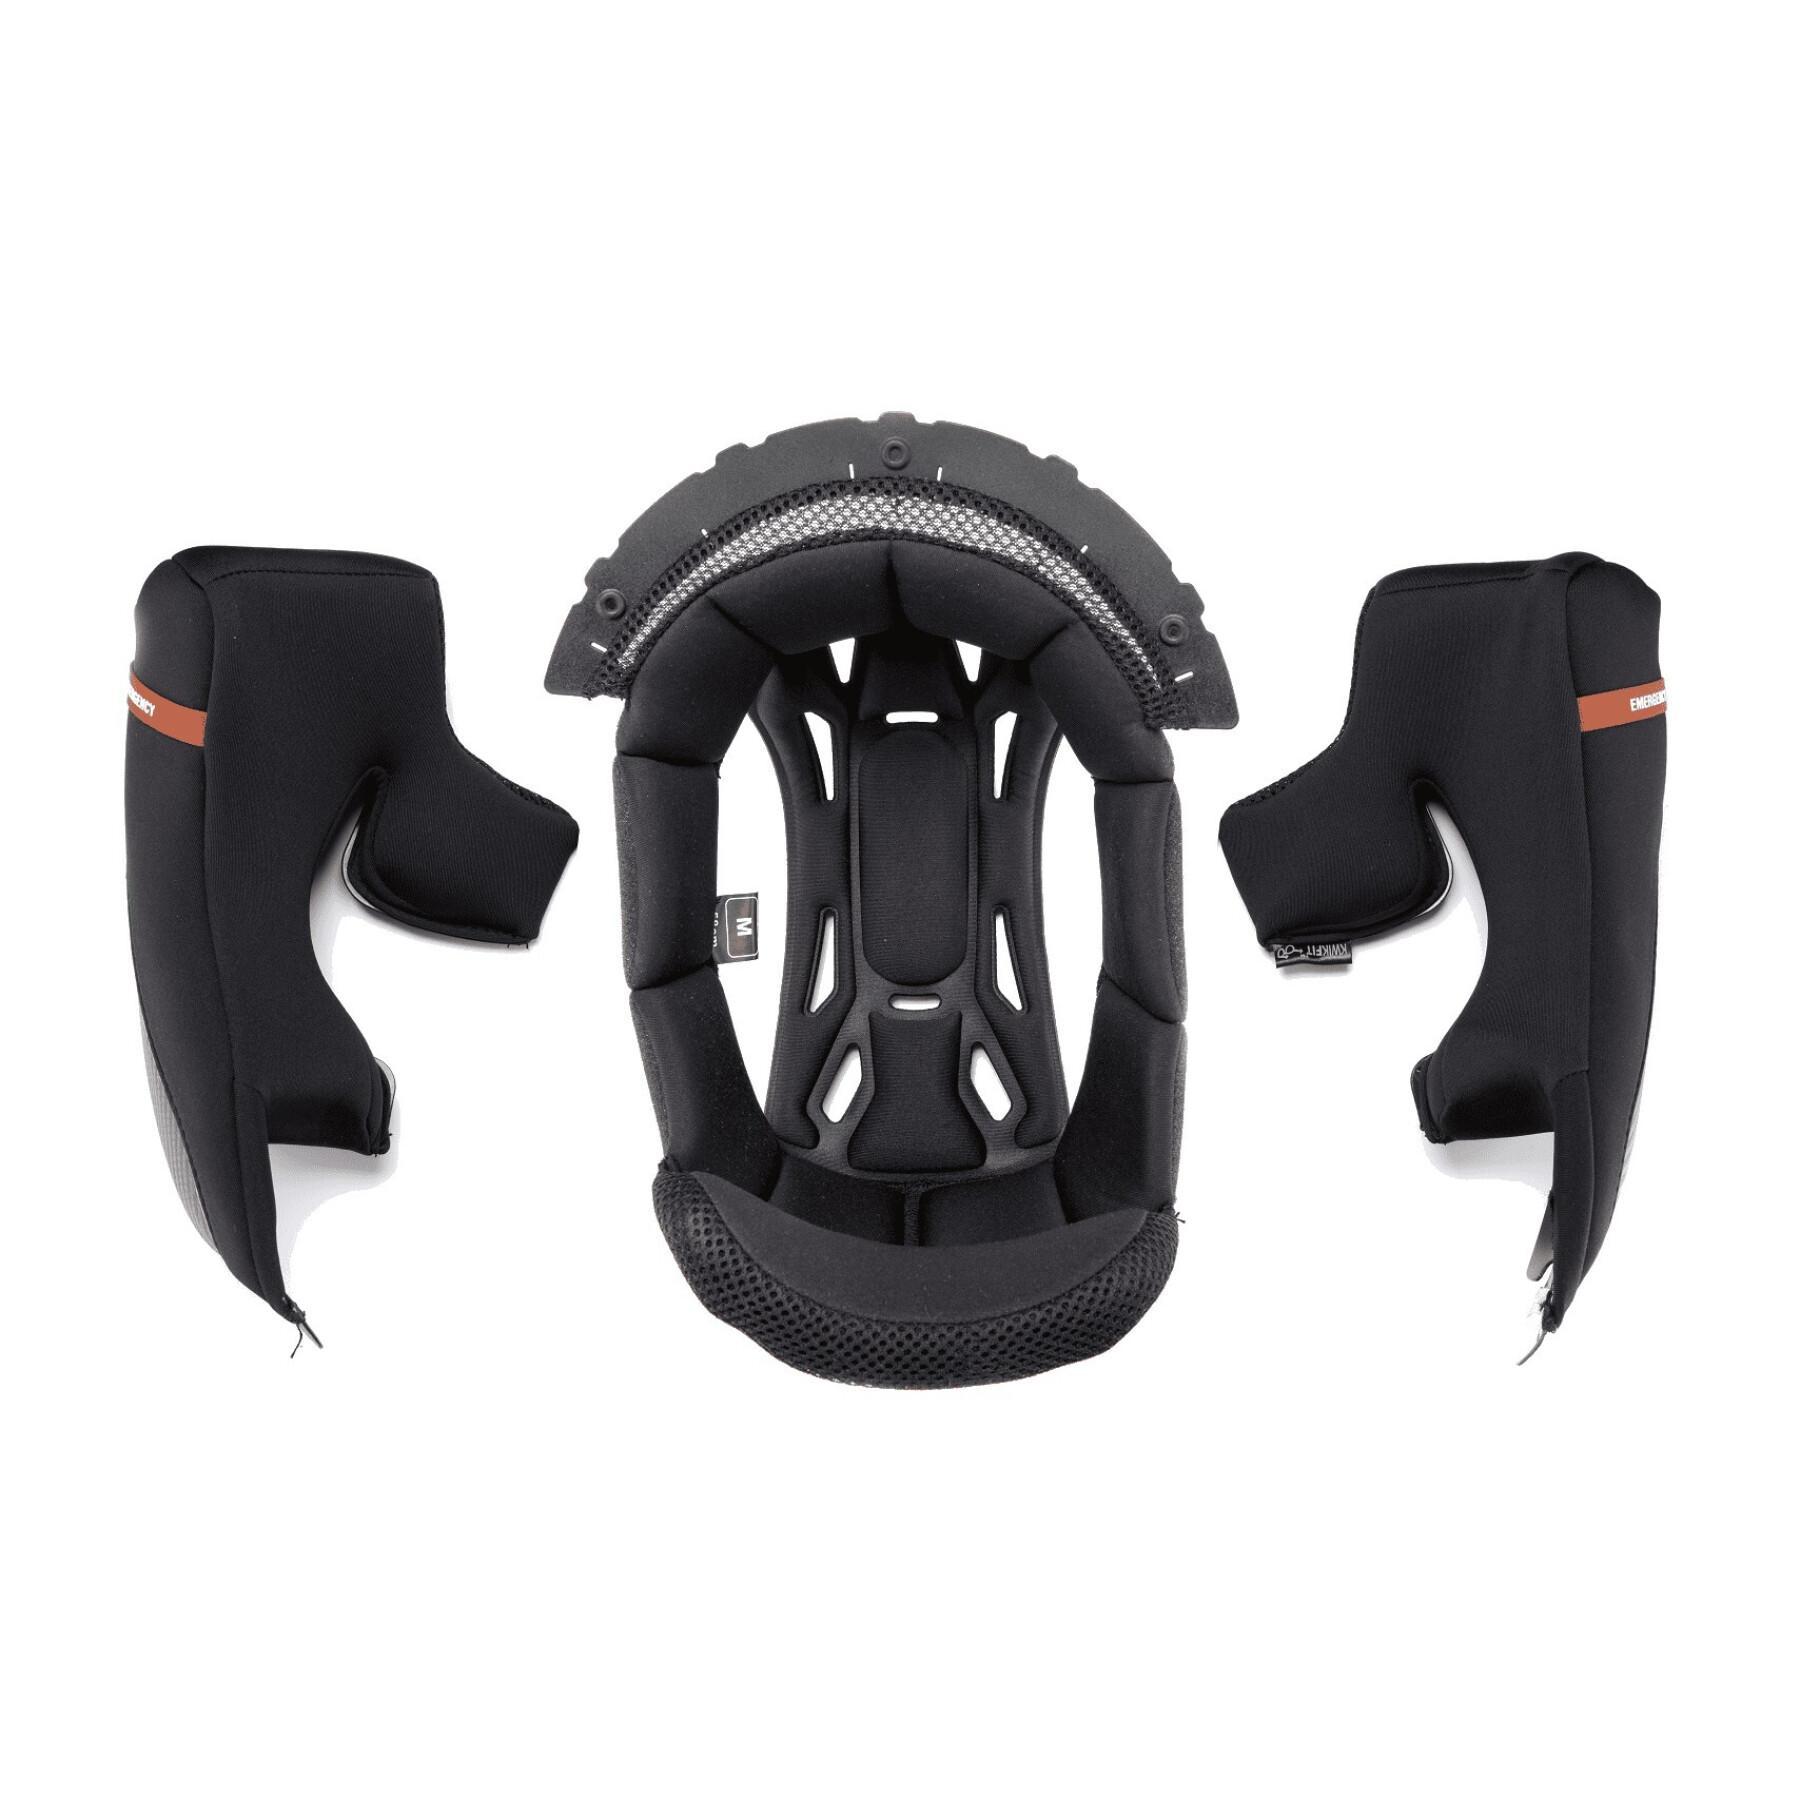 Standard motorcycle helmet foam Scorpion EXO-490 KW